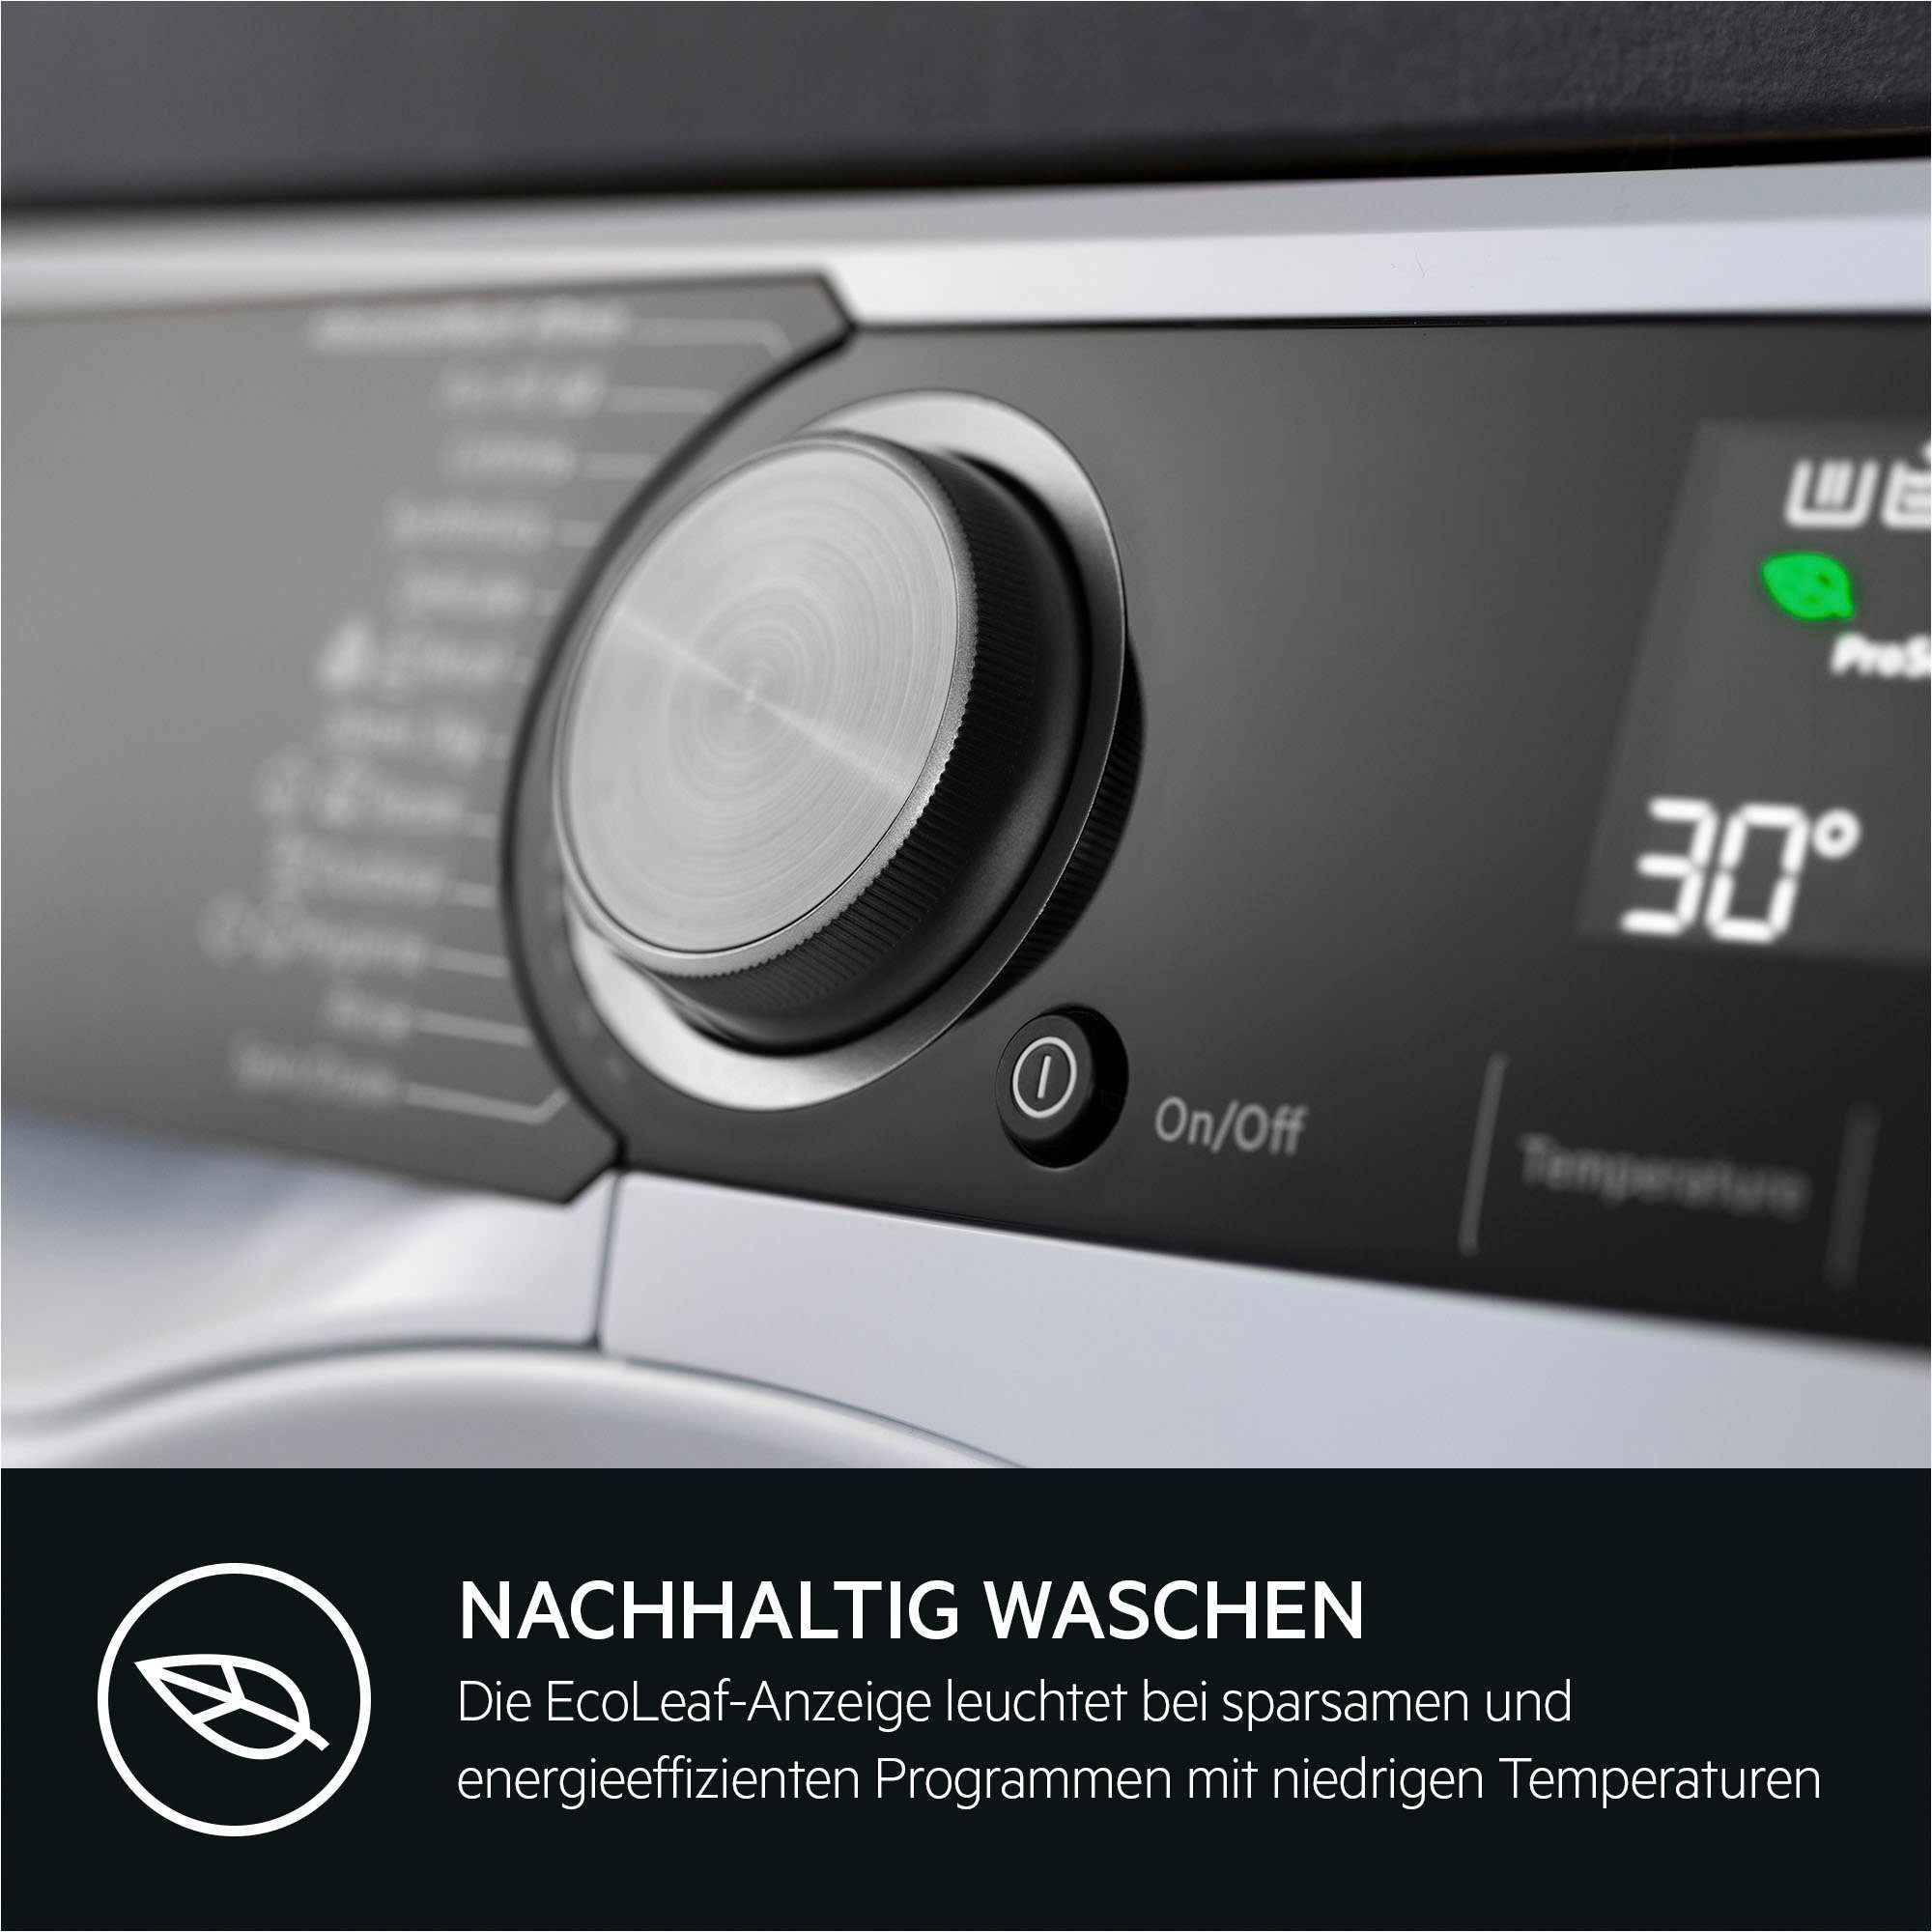 AEG Waschmaschine kg, weniger % U/min, Dampf-Programm 1600 LR7A70690, 96 Wasserverbrauch - für 9 ProSteam